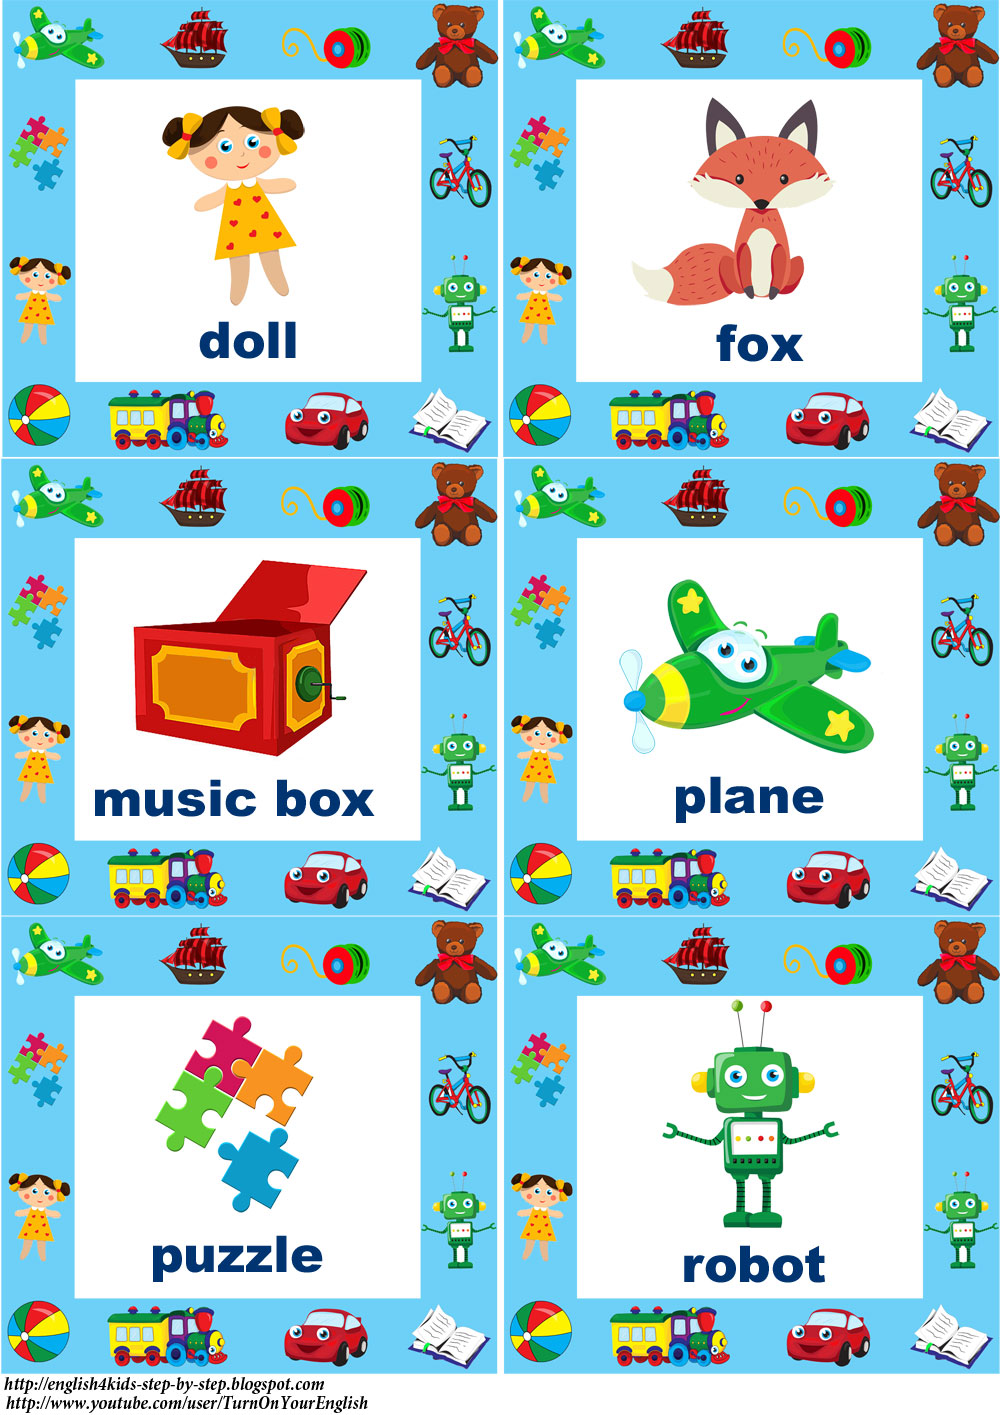 Изображения игрушек на английском в формате jpg